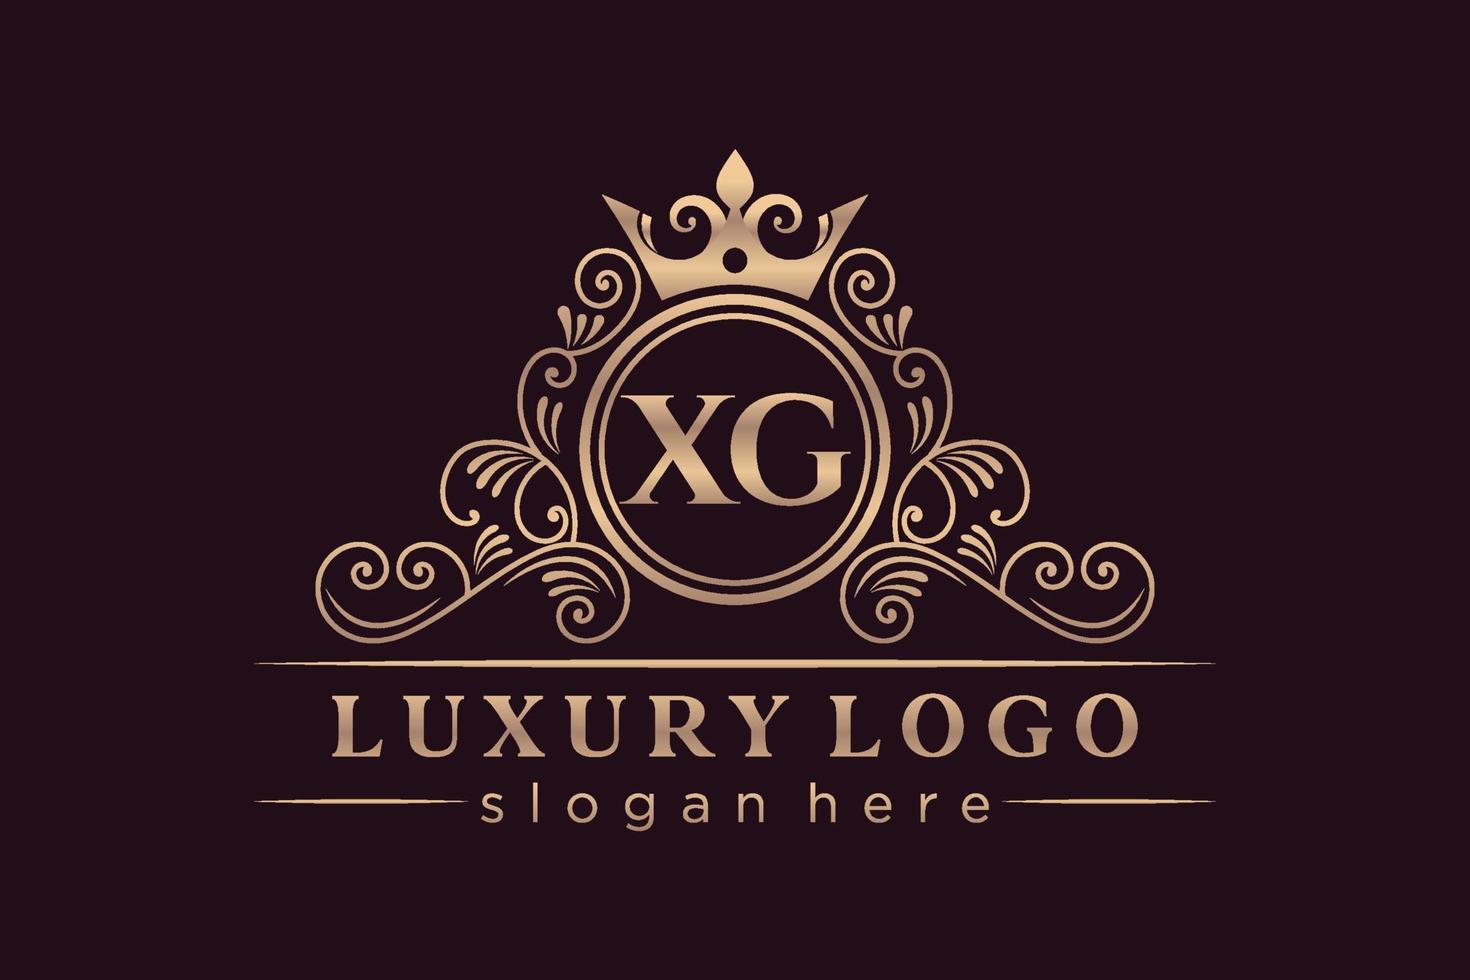 xg iniziale lettera oro calligrafico femminile floreale mano disegnato araldico monogramma antico Vintage ▾ stile lusso logo design premio vettore